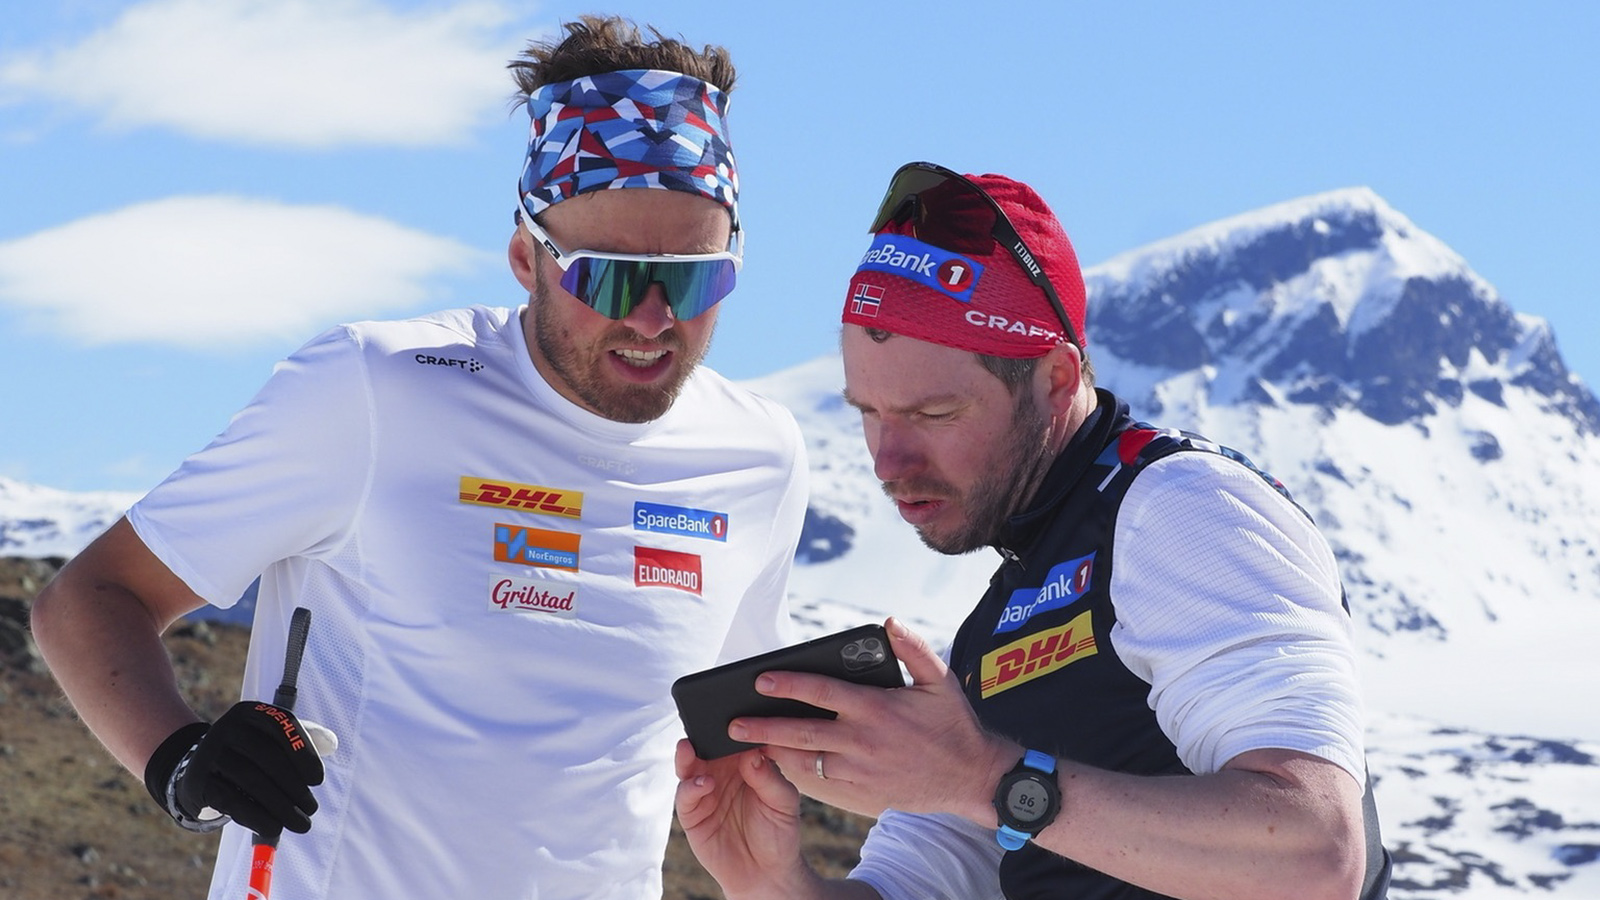 Trener og skiløper på fjellet analyserer på mobilen